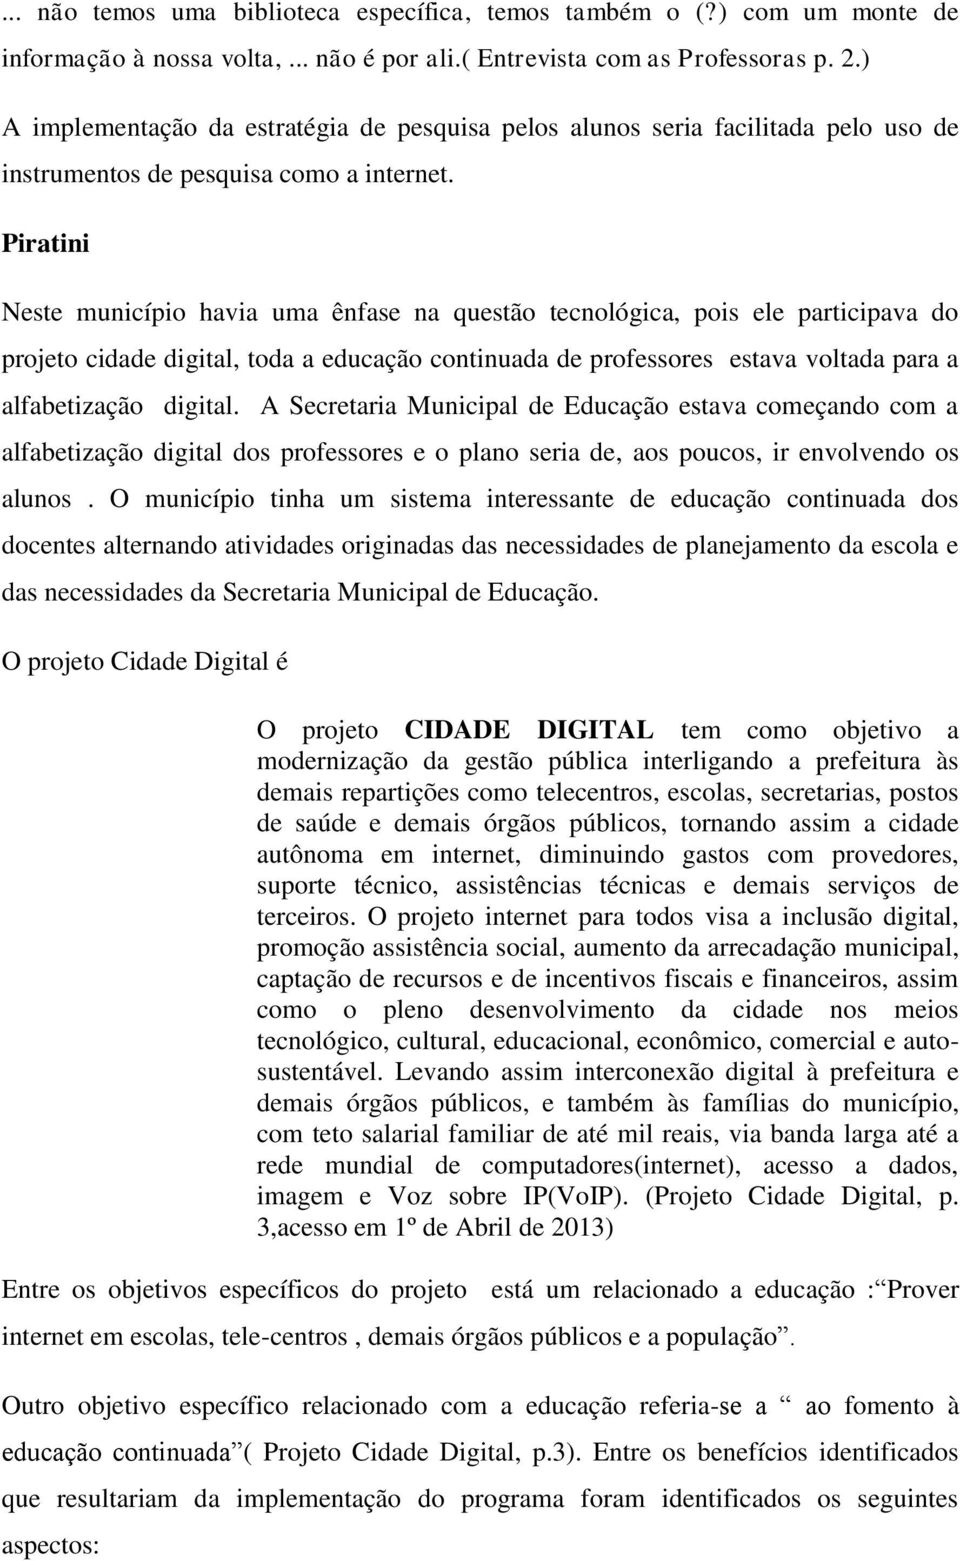 Piratini Neste município havia uma ênfase na questão tecnológica, pois ele participava do projeto cidade digital, toda a educação continuada de professores estava voltada para a alfabetização digital.